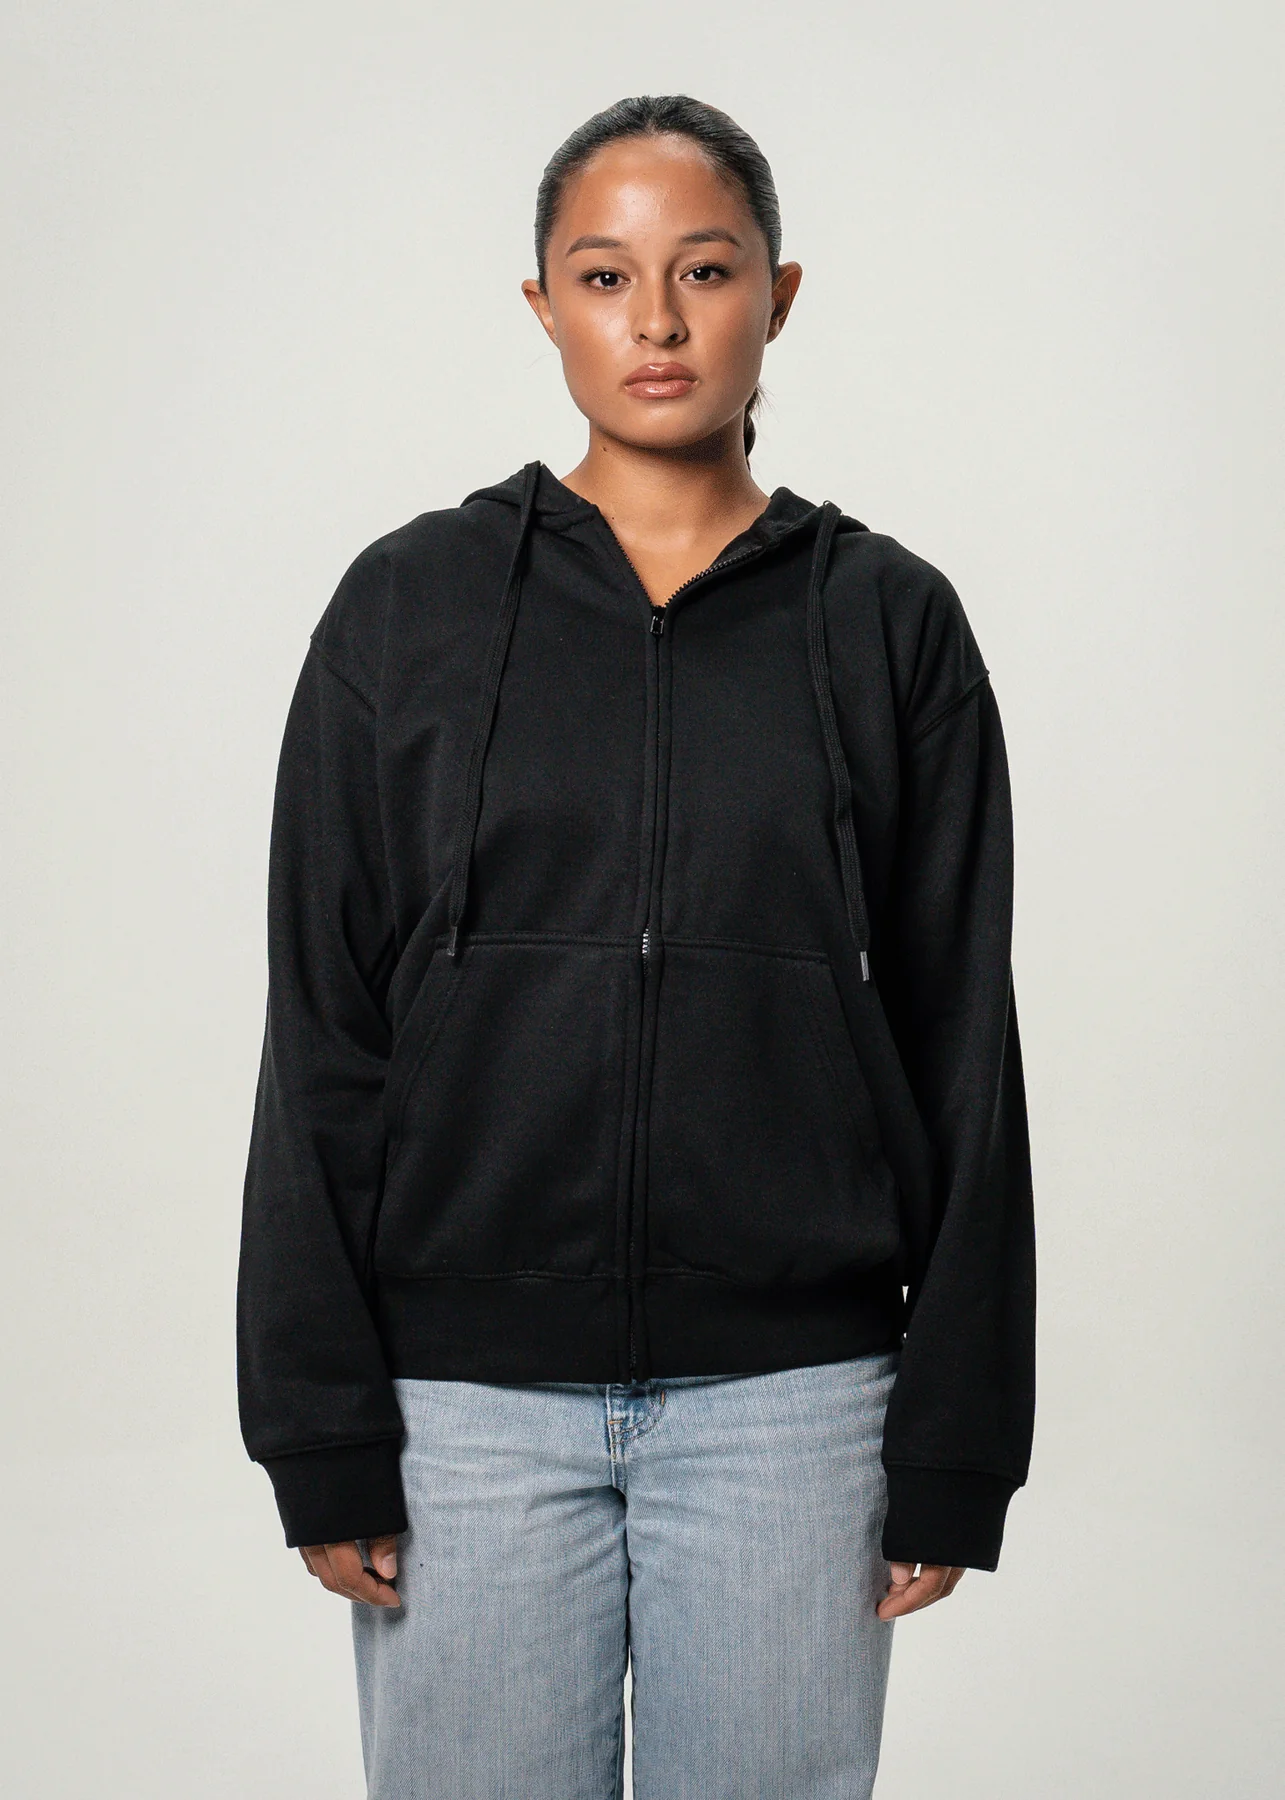 Women's Heavy Blend Full-Zip Hooded SweatShirt Black